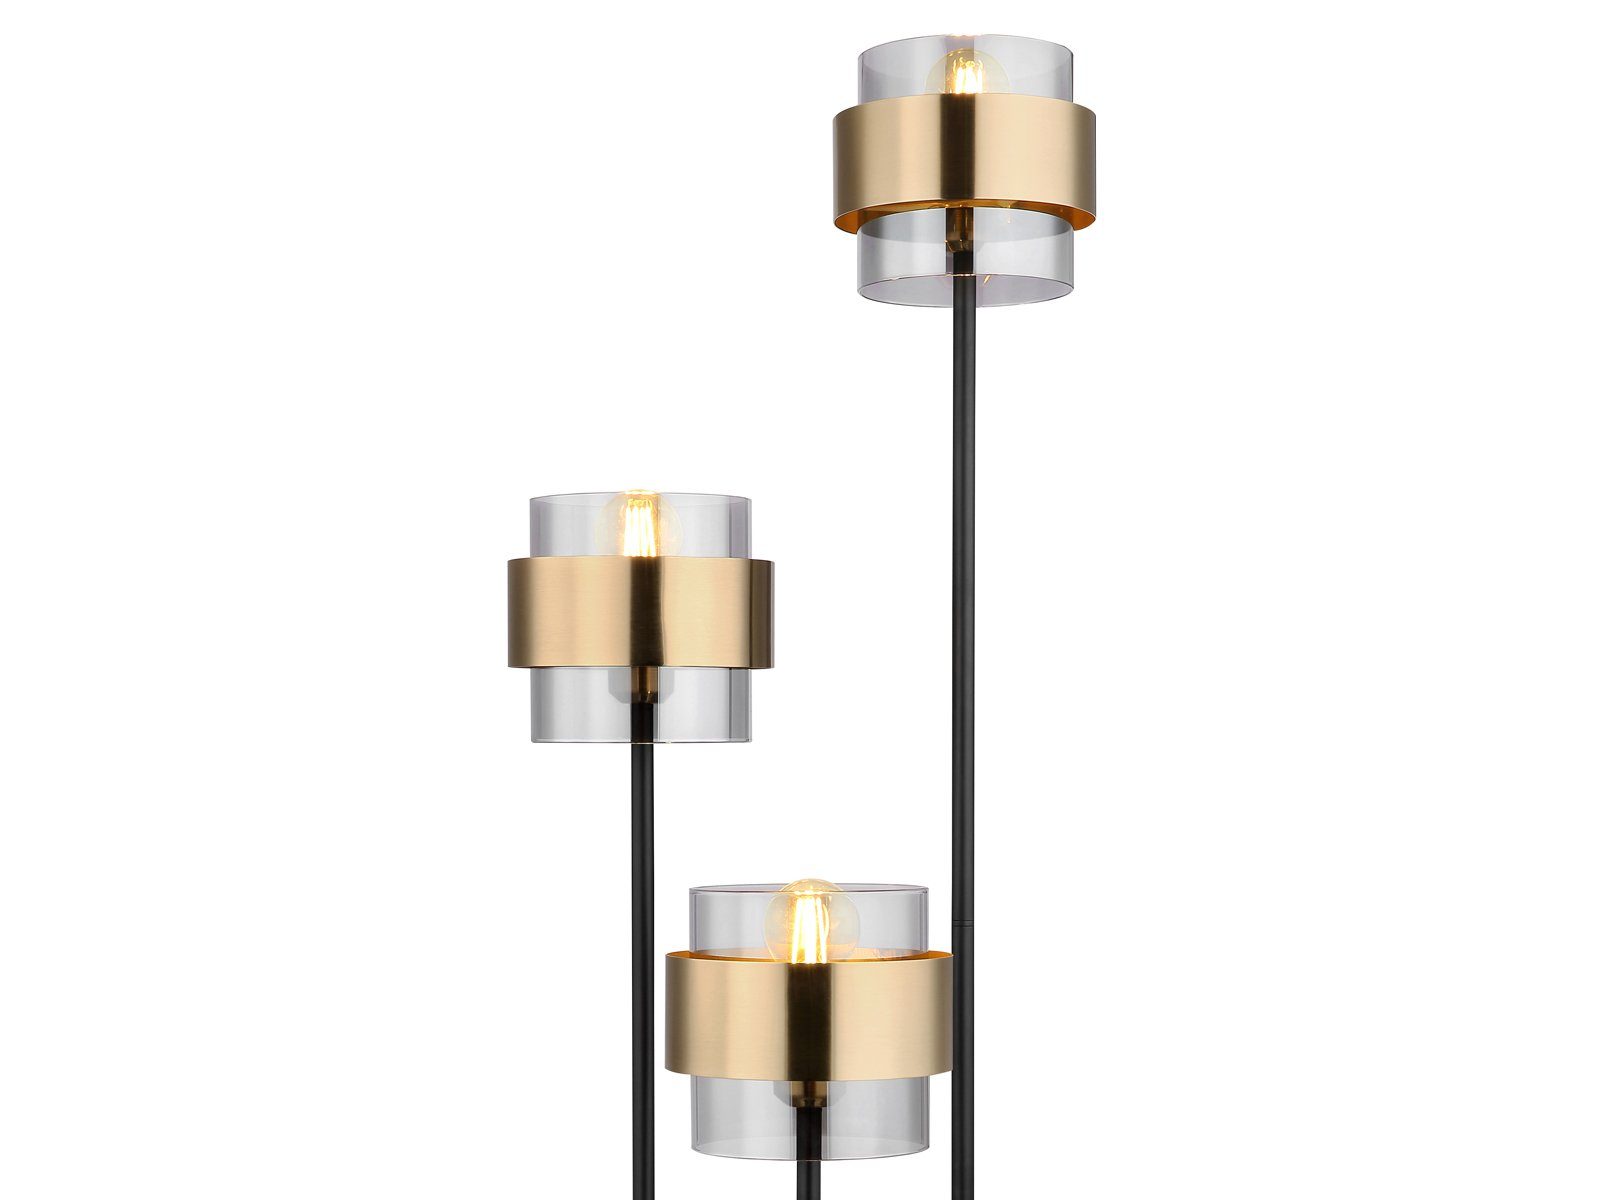 Designer warmweiß, LED Höhe meineWunschleuchte Rauchglas LED Stehlampe, ausgefallen-e Leuchtmittel stufenweise über Fußschalter wechselbar, dimmbar, 167cm Gold-en, dimmbar modern-e